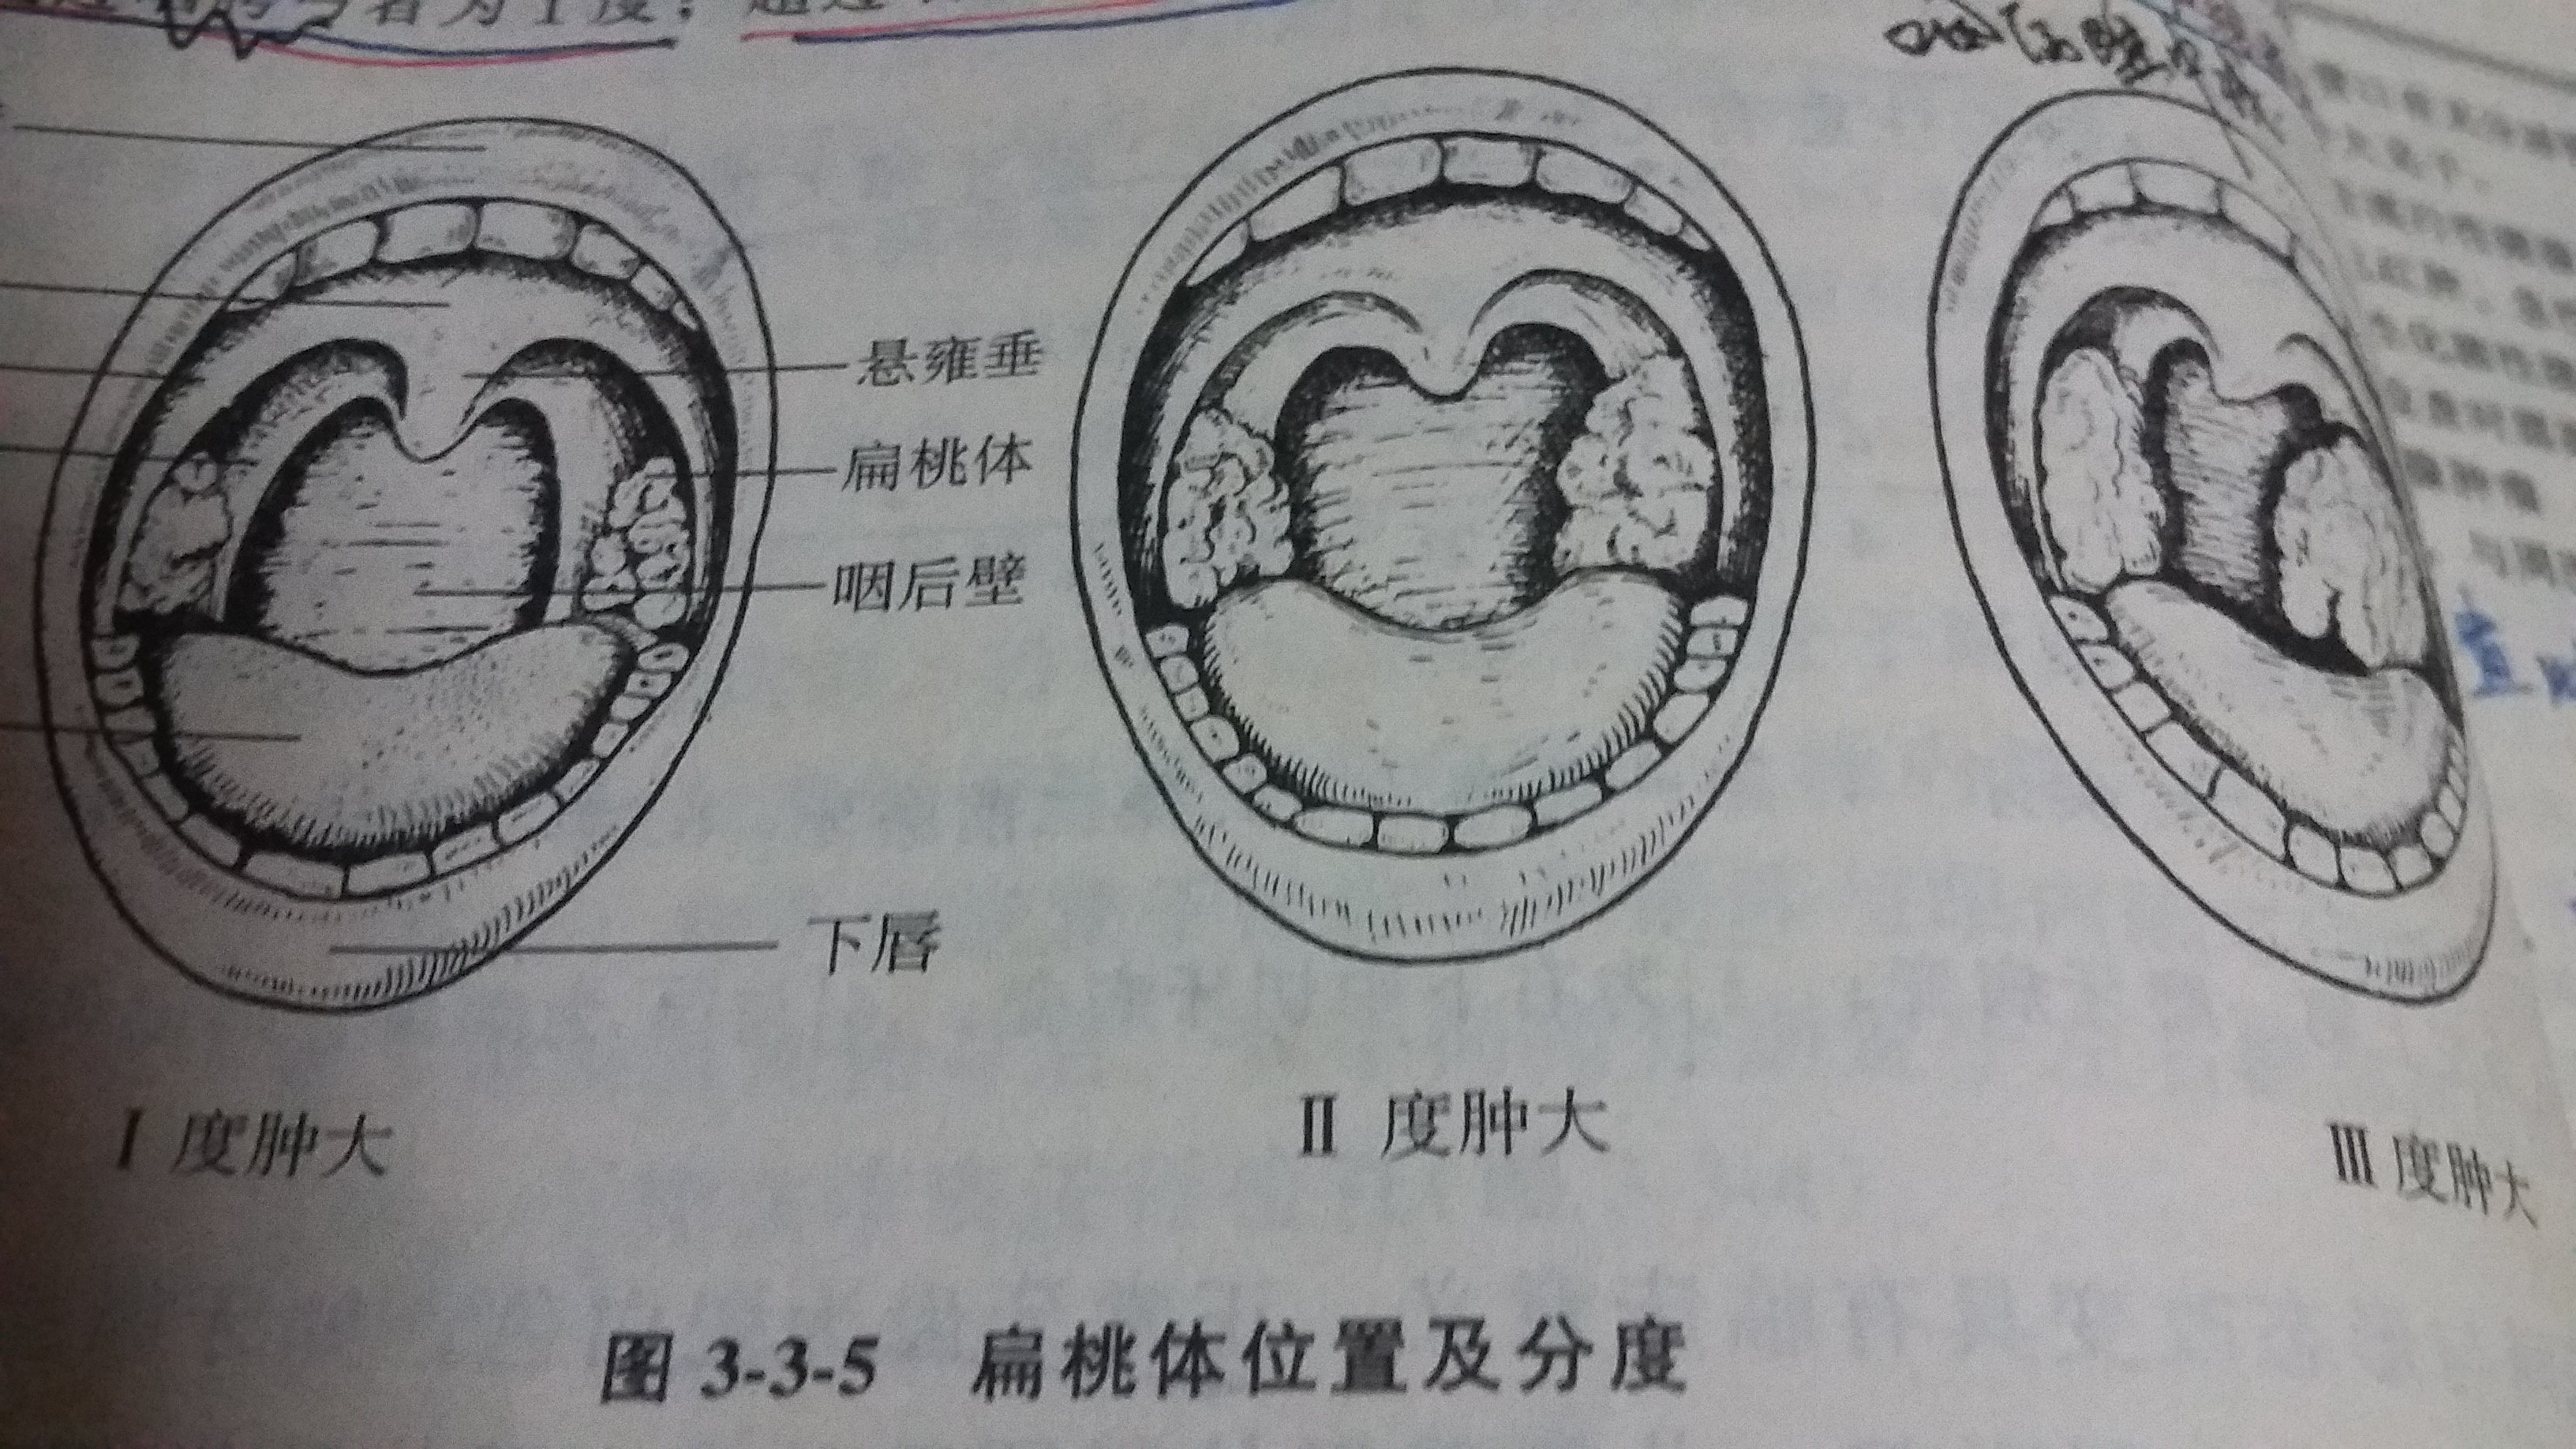 咽腭弓正常的图片图片